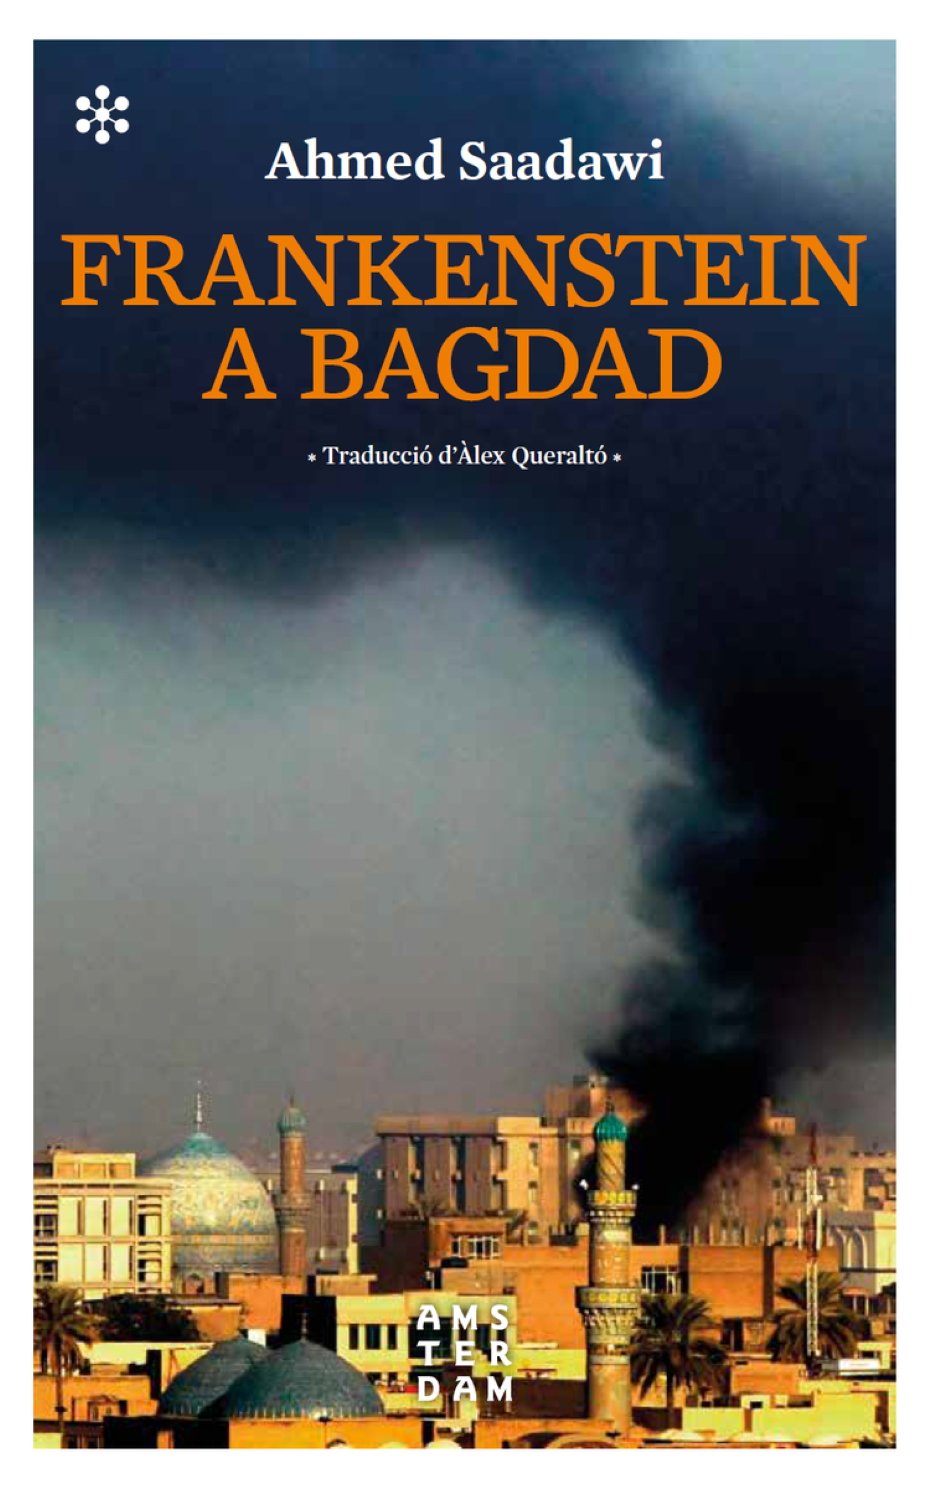 Ahmed Saadawi, 'Frankenstein a Bagdad'. Amsterdam ed., 336 p., 22,95 €.